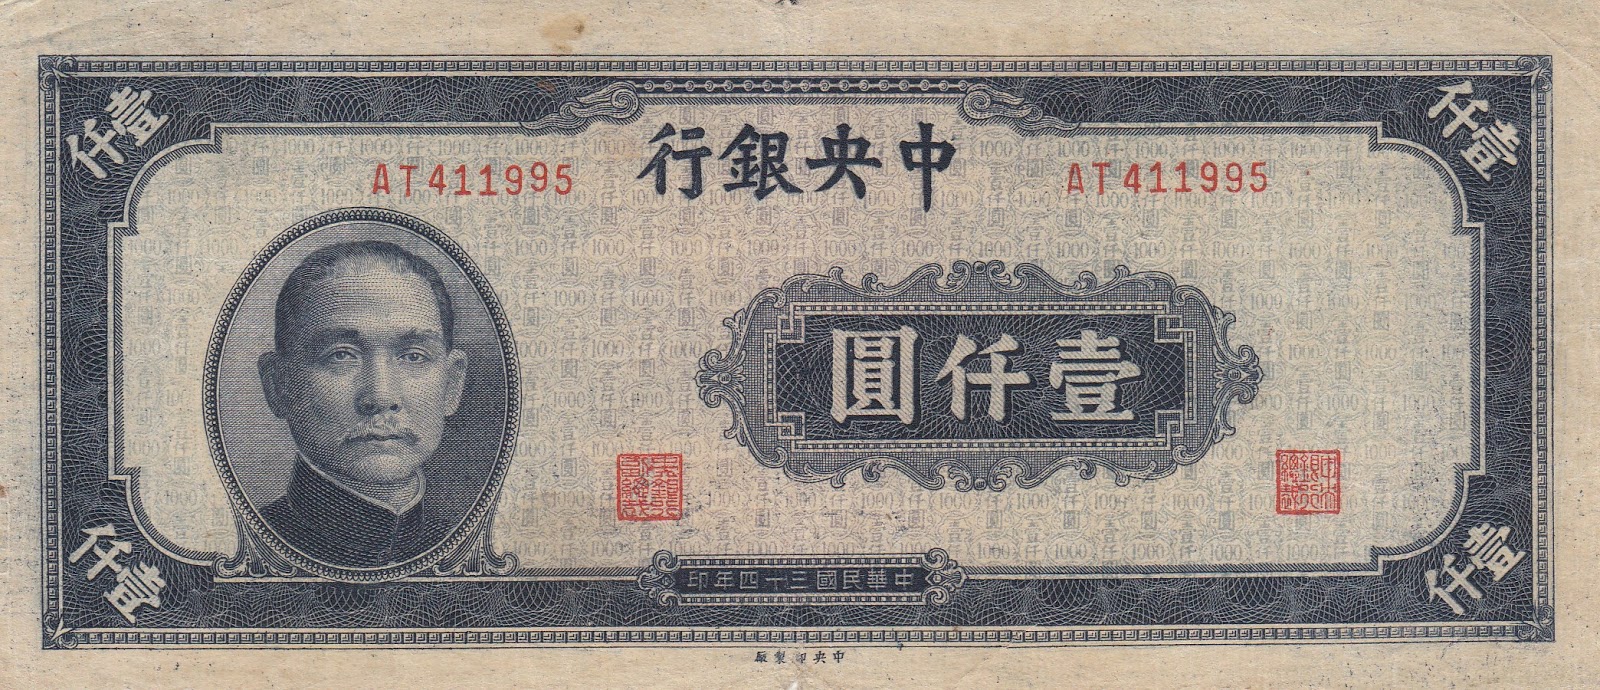 Тысяча долларов в юанях. 1000 Китайских юаней. Бона Китай 10 юаней 1945. 1000 Юаней купюра. Китайская купюра 1000.